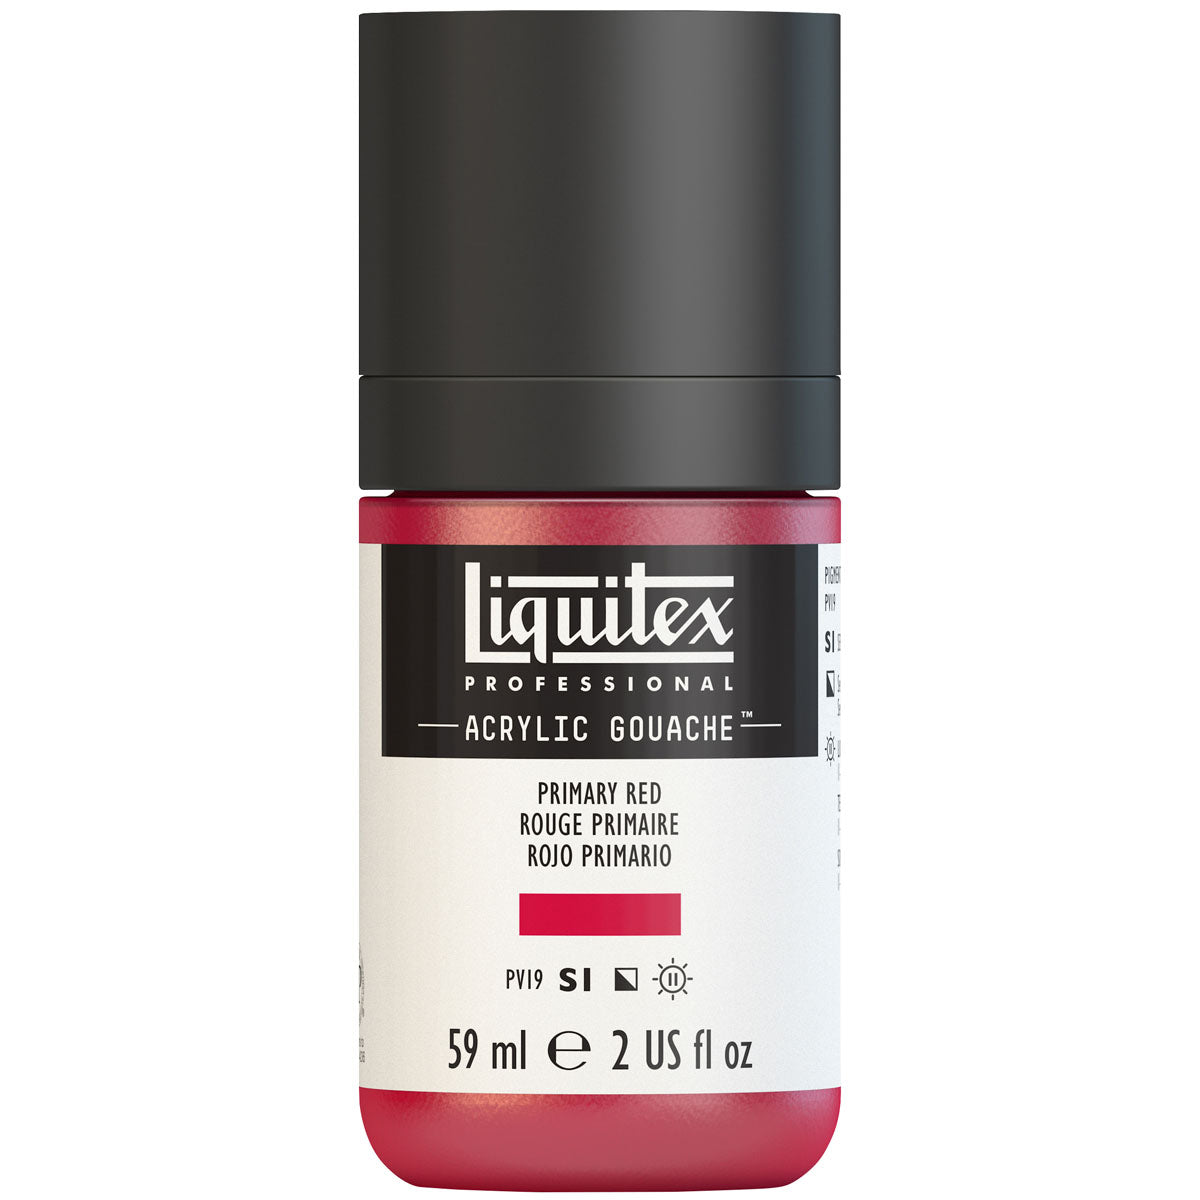 Liquitex - Acrylic Gouache 59ml S1 - Primary Red